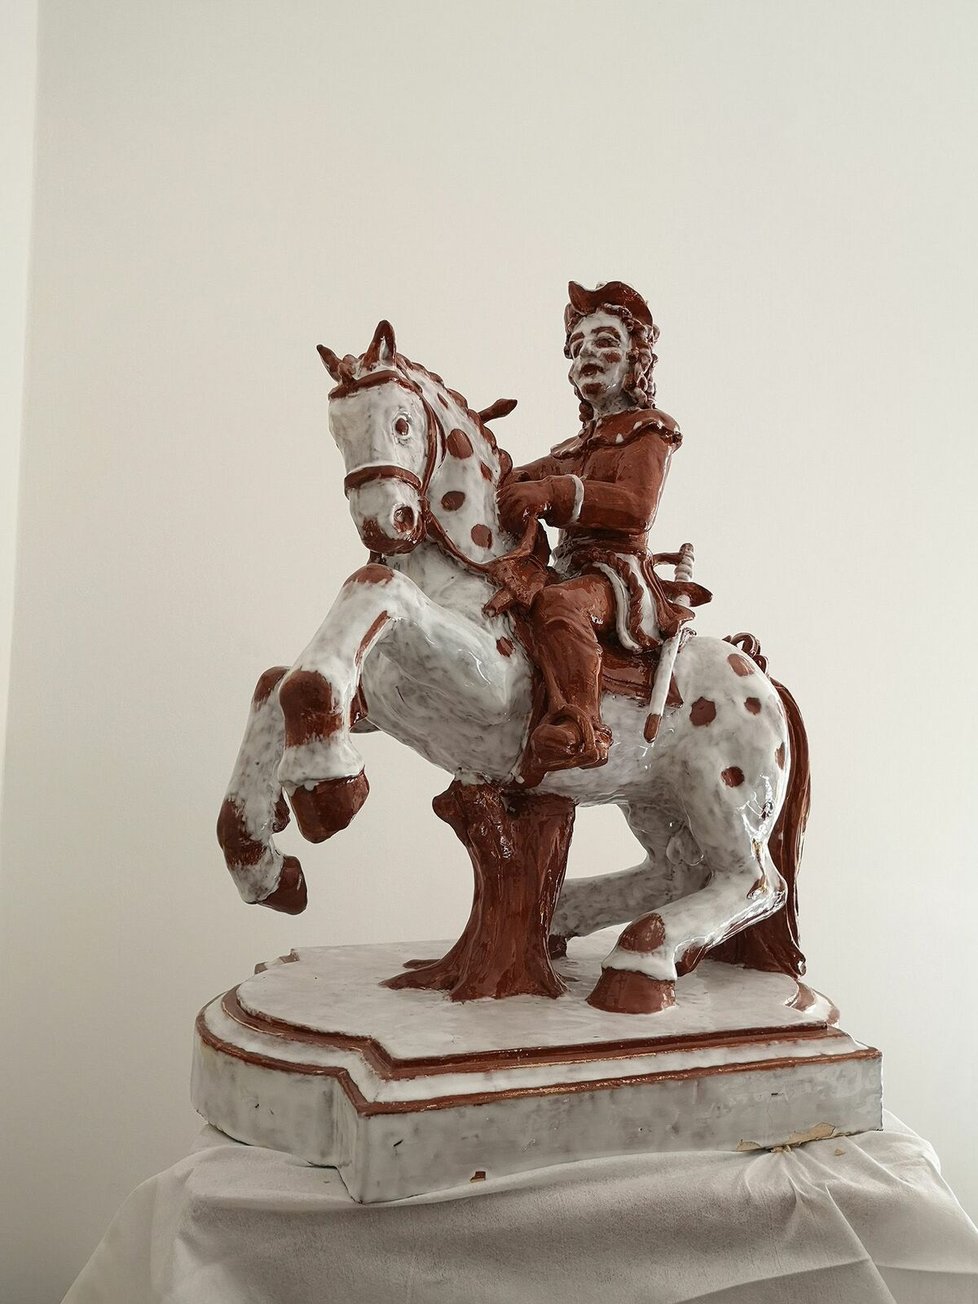 Repliku jezdecké sošky Evžena Savojského vyrobil původní výrobce kachlových kamen, rakouská firma Keramische Werkstätte Angermayer.